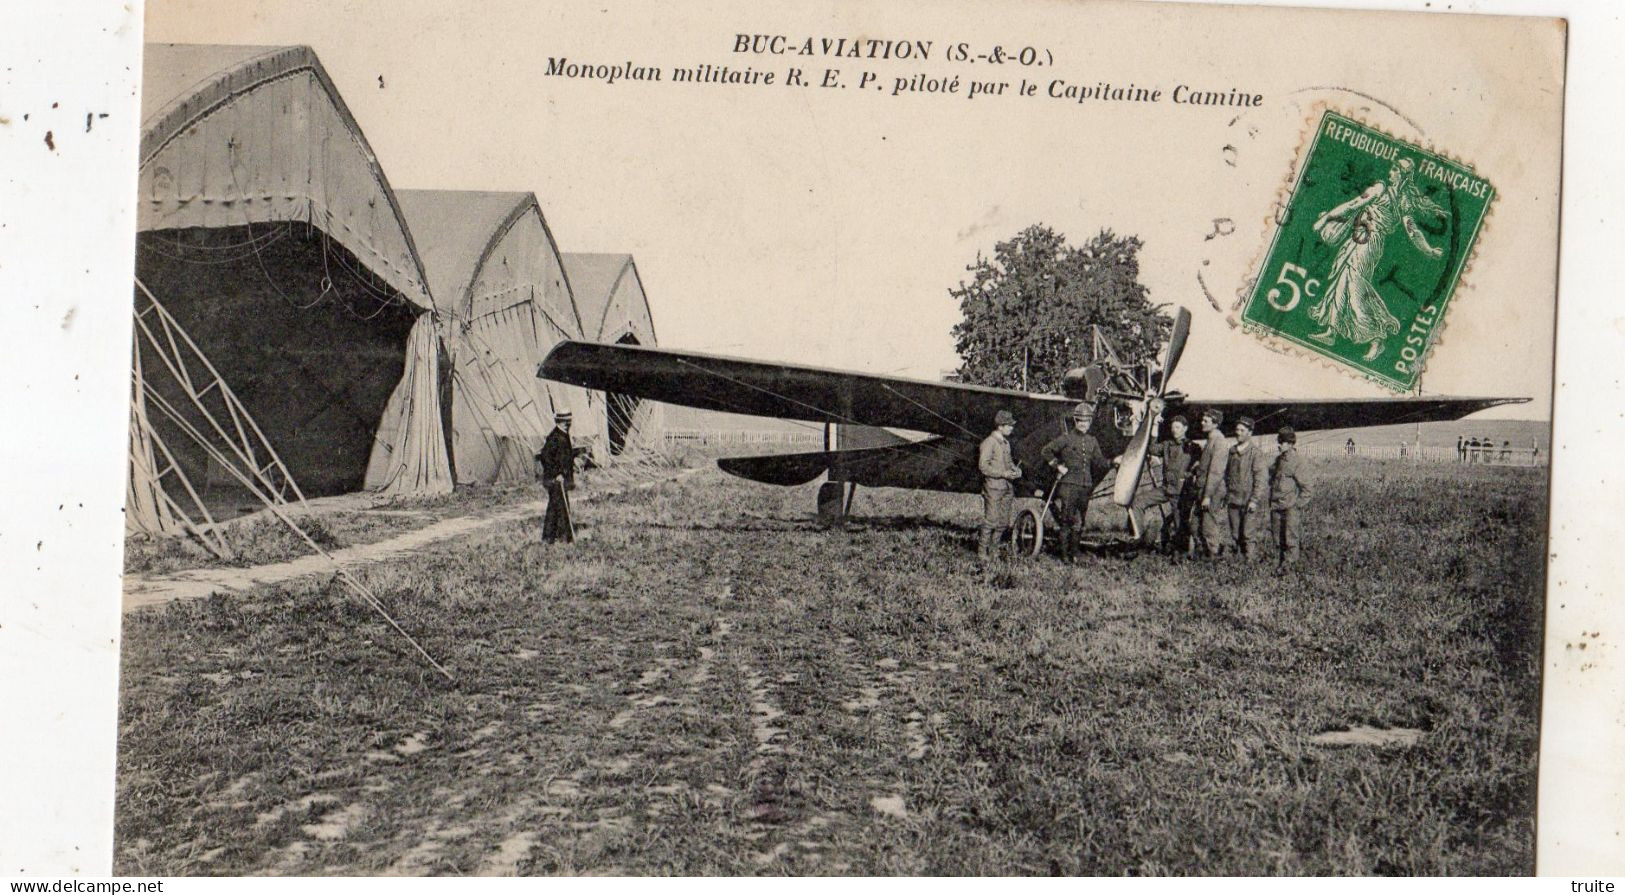 BUC AVIATION MONOPLAN MILITAIRE R.E.P. PILOTE PAR LE CAPITAINE CAMINE - Buc